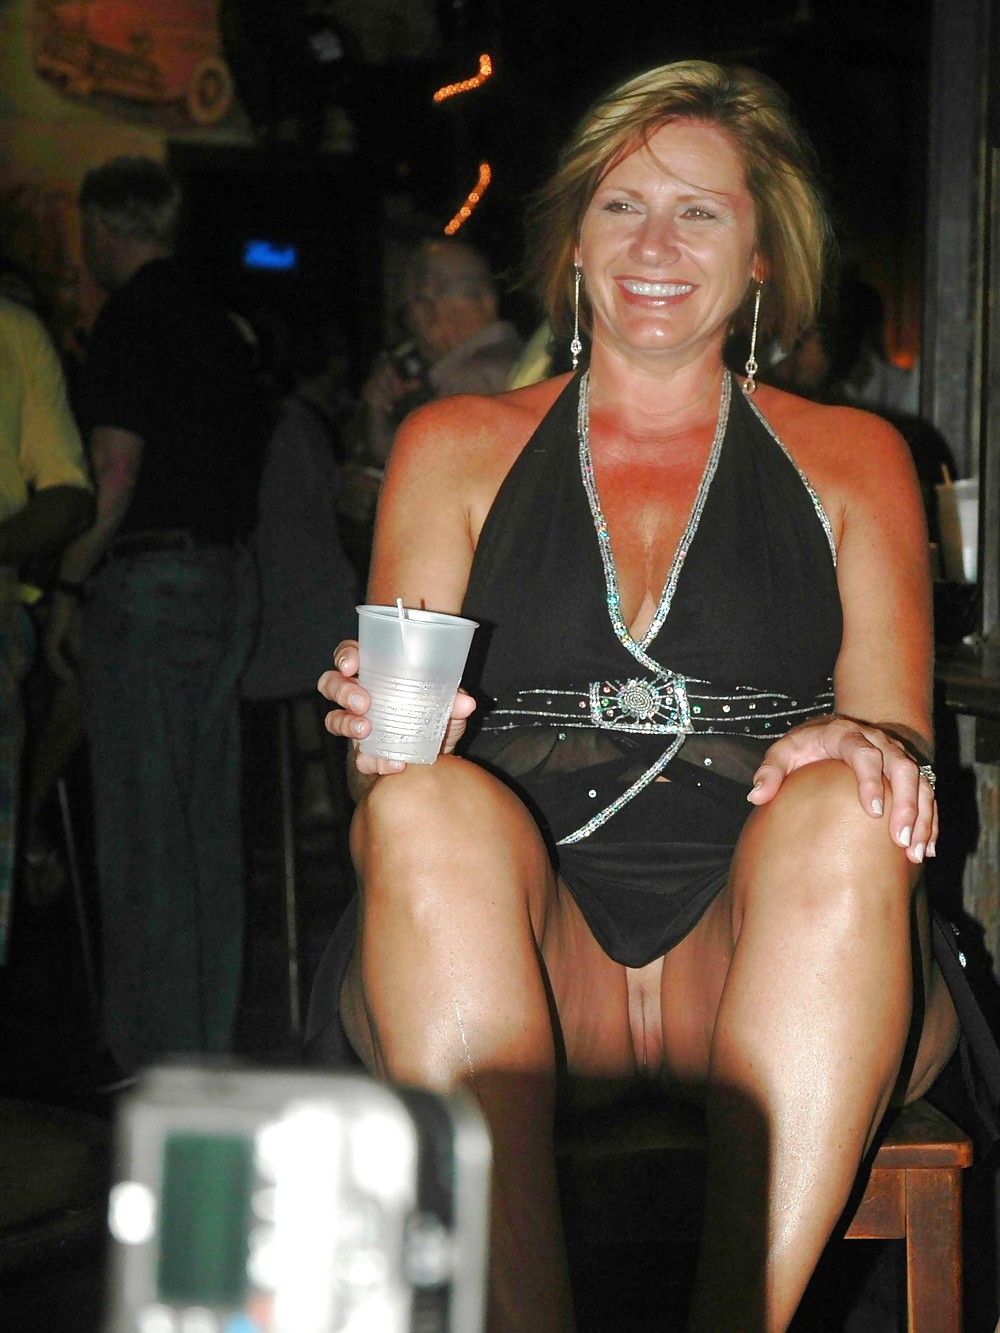 パンティなしのアップスカート #rec amateur showing pussy publicnudity 2
 #6514688